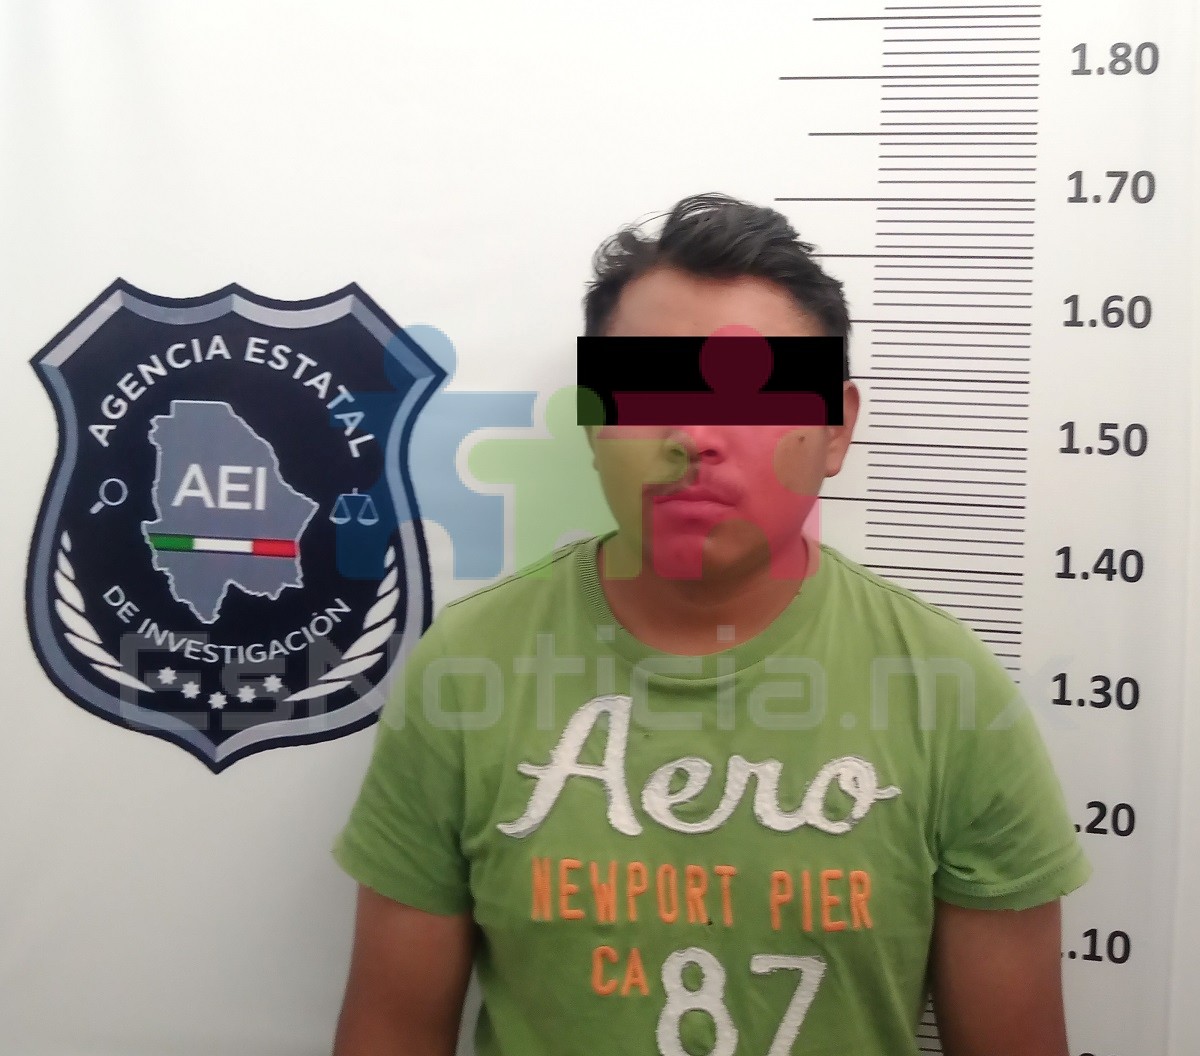 #Cuauhtémoc | Le dan 21 años de cárcel por violar a jovencita de 13 años